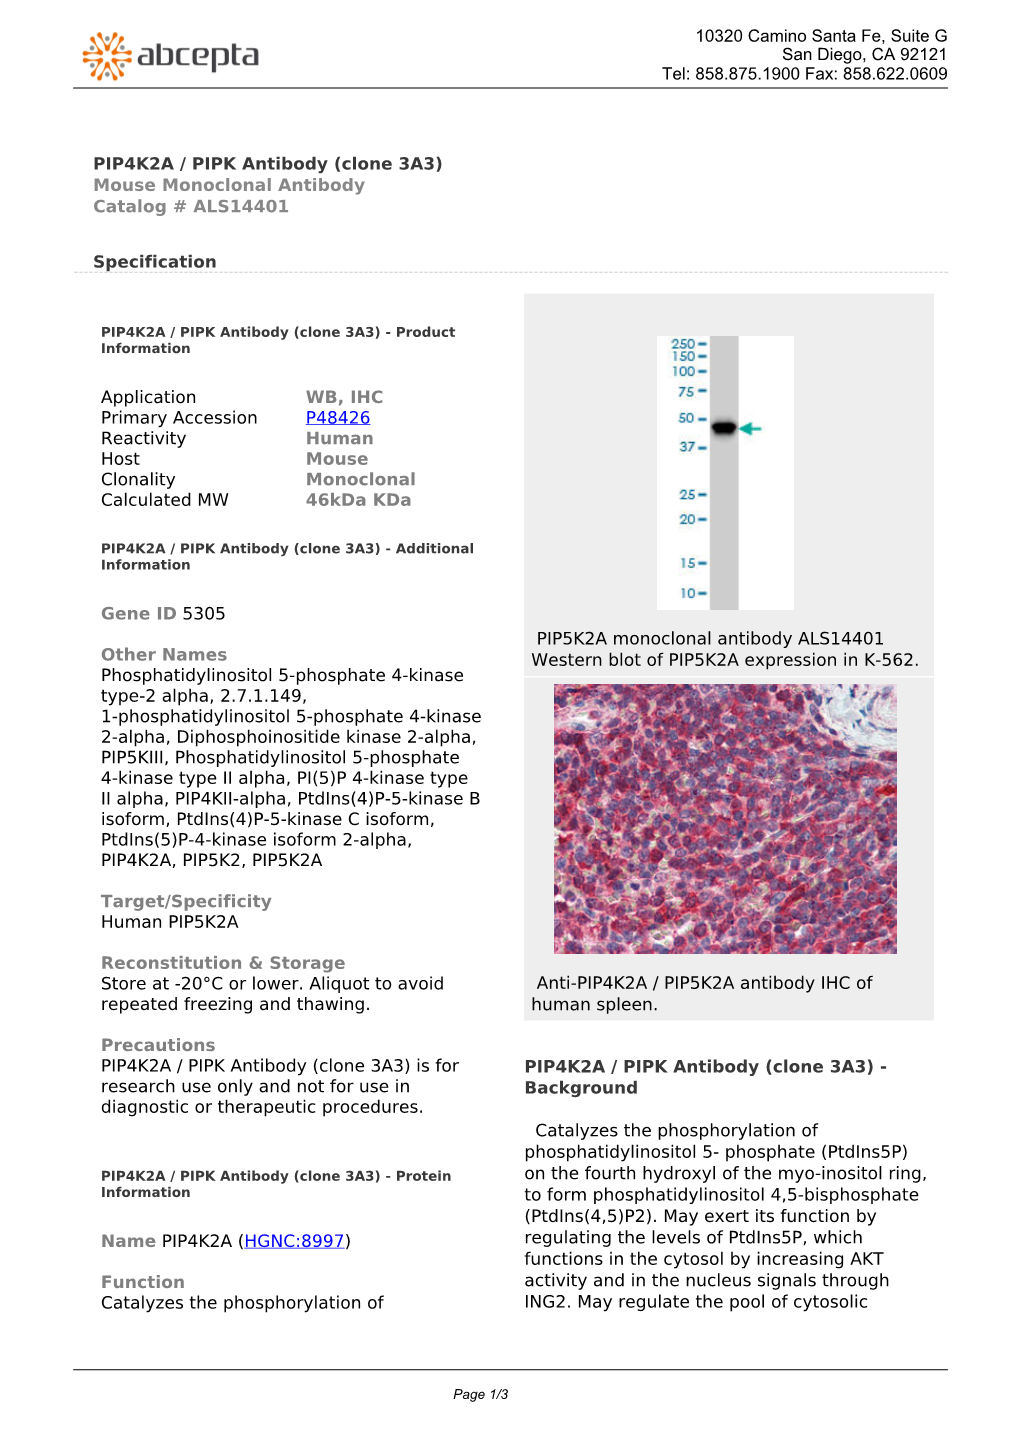 PIP4K2A / PIPK Antibody (Clone 3A3) Mouse Monoclonal Antibody Catalog # ALS14401